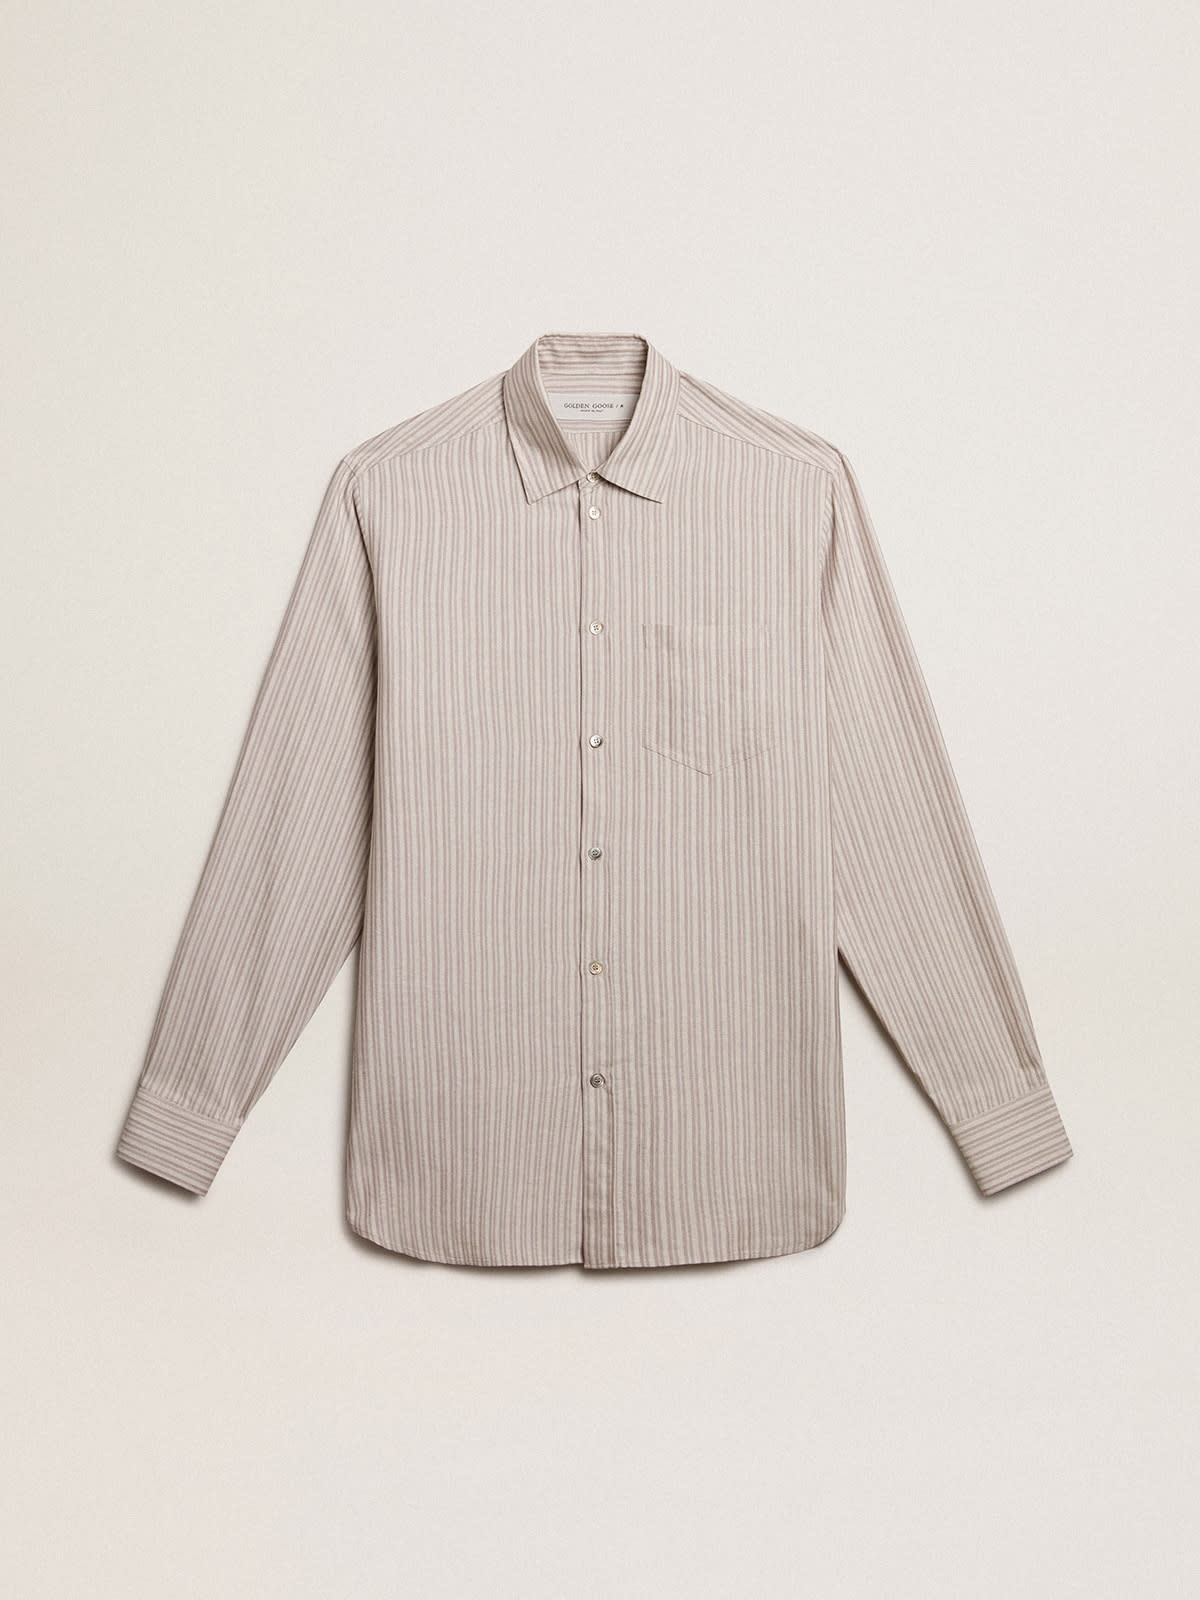 Men's viscose-blend linen shirt with striped pattern - 1